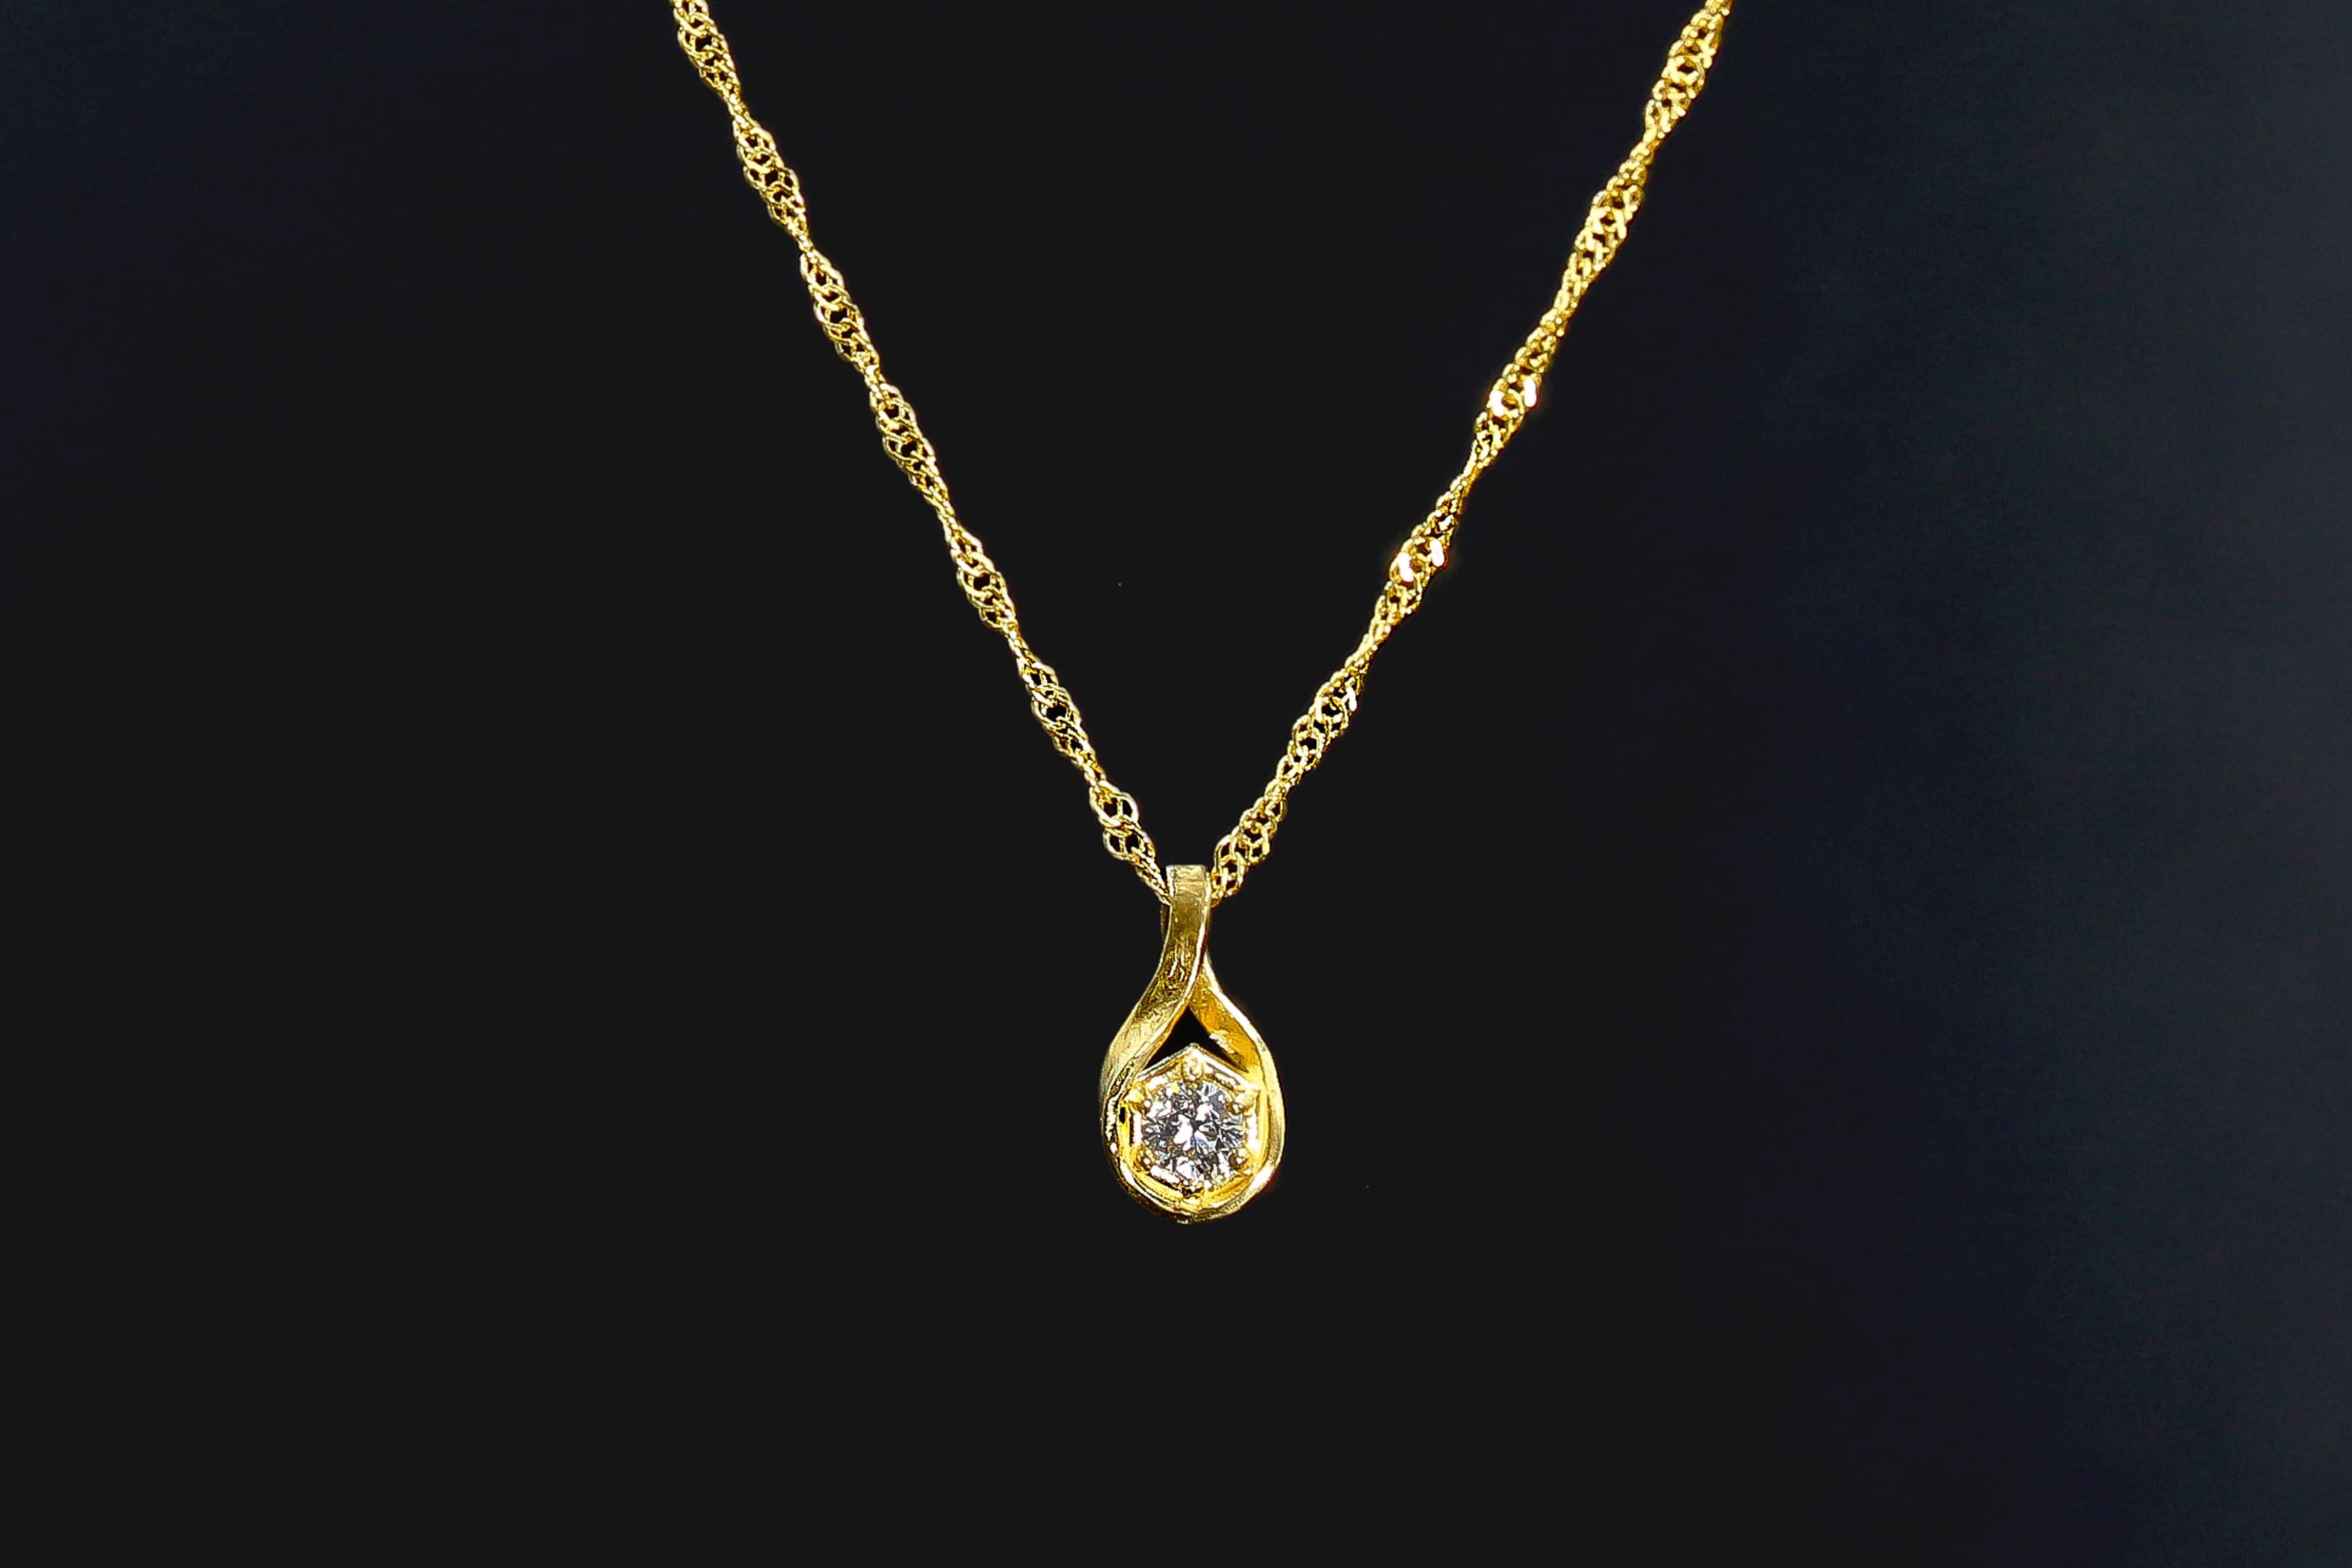 価値の高い素材で作る「K24純金＆天然ダイヤモンド」のネックレス ...